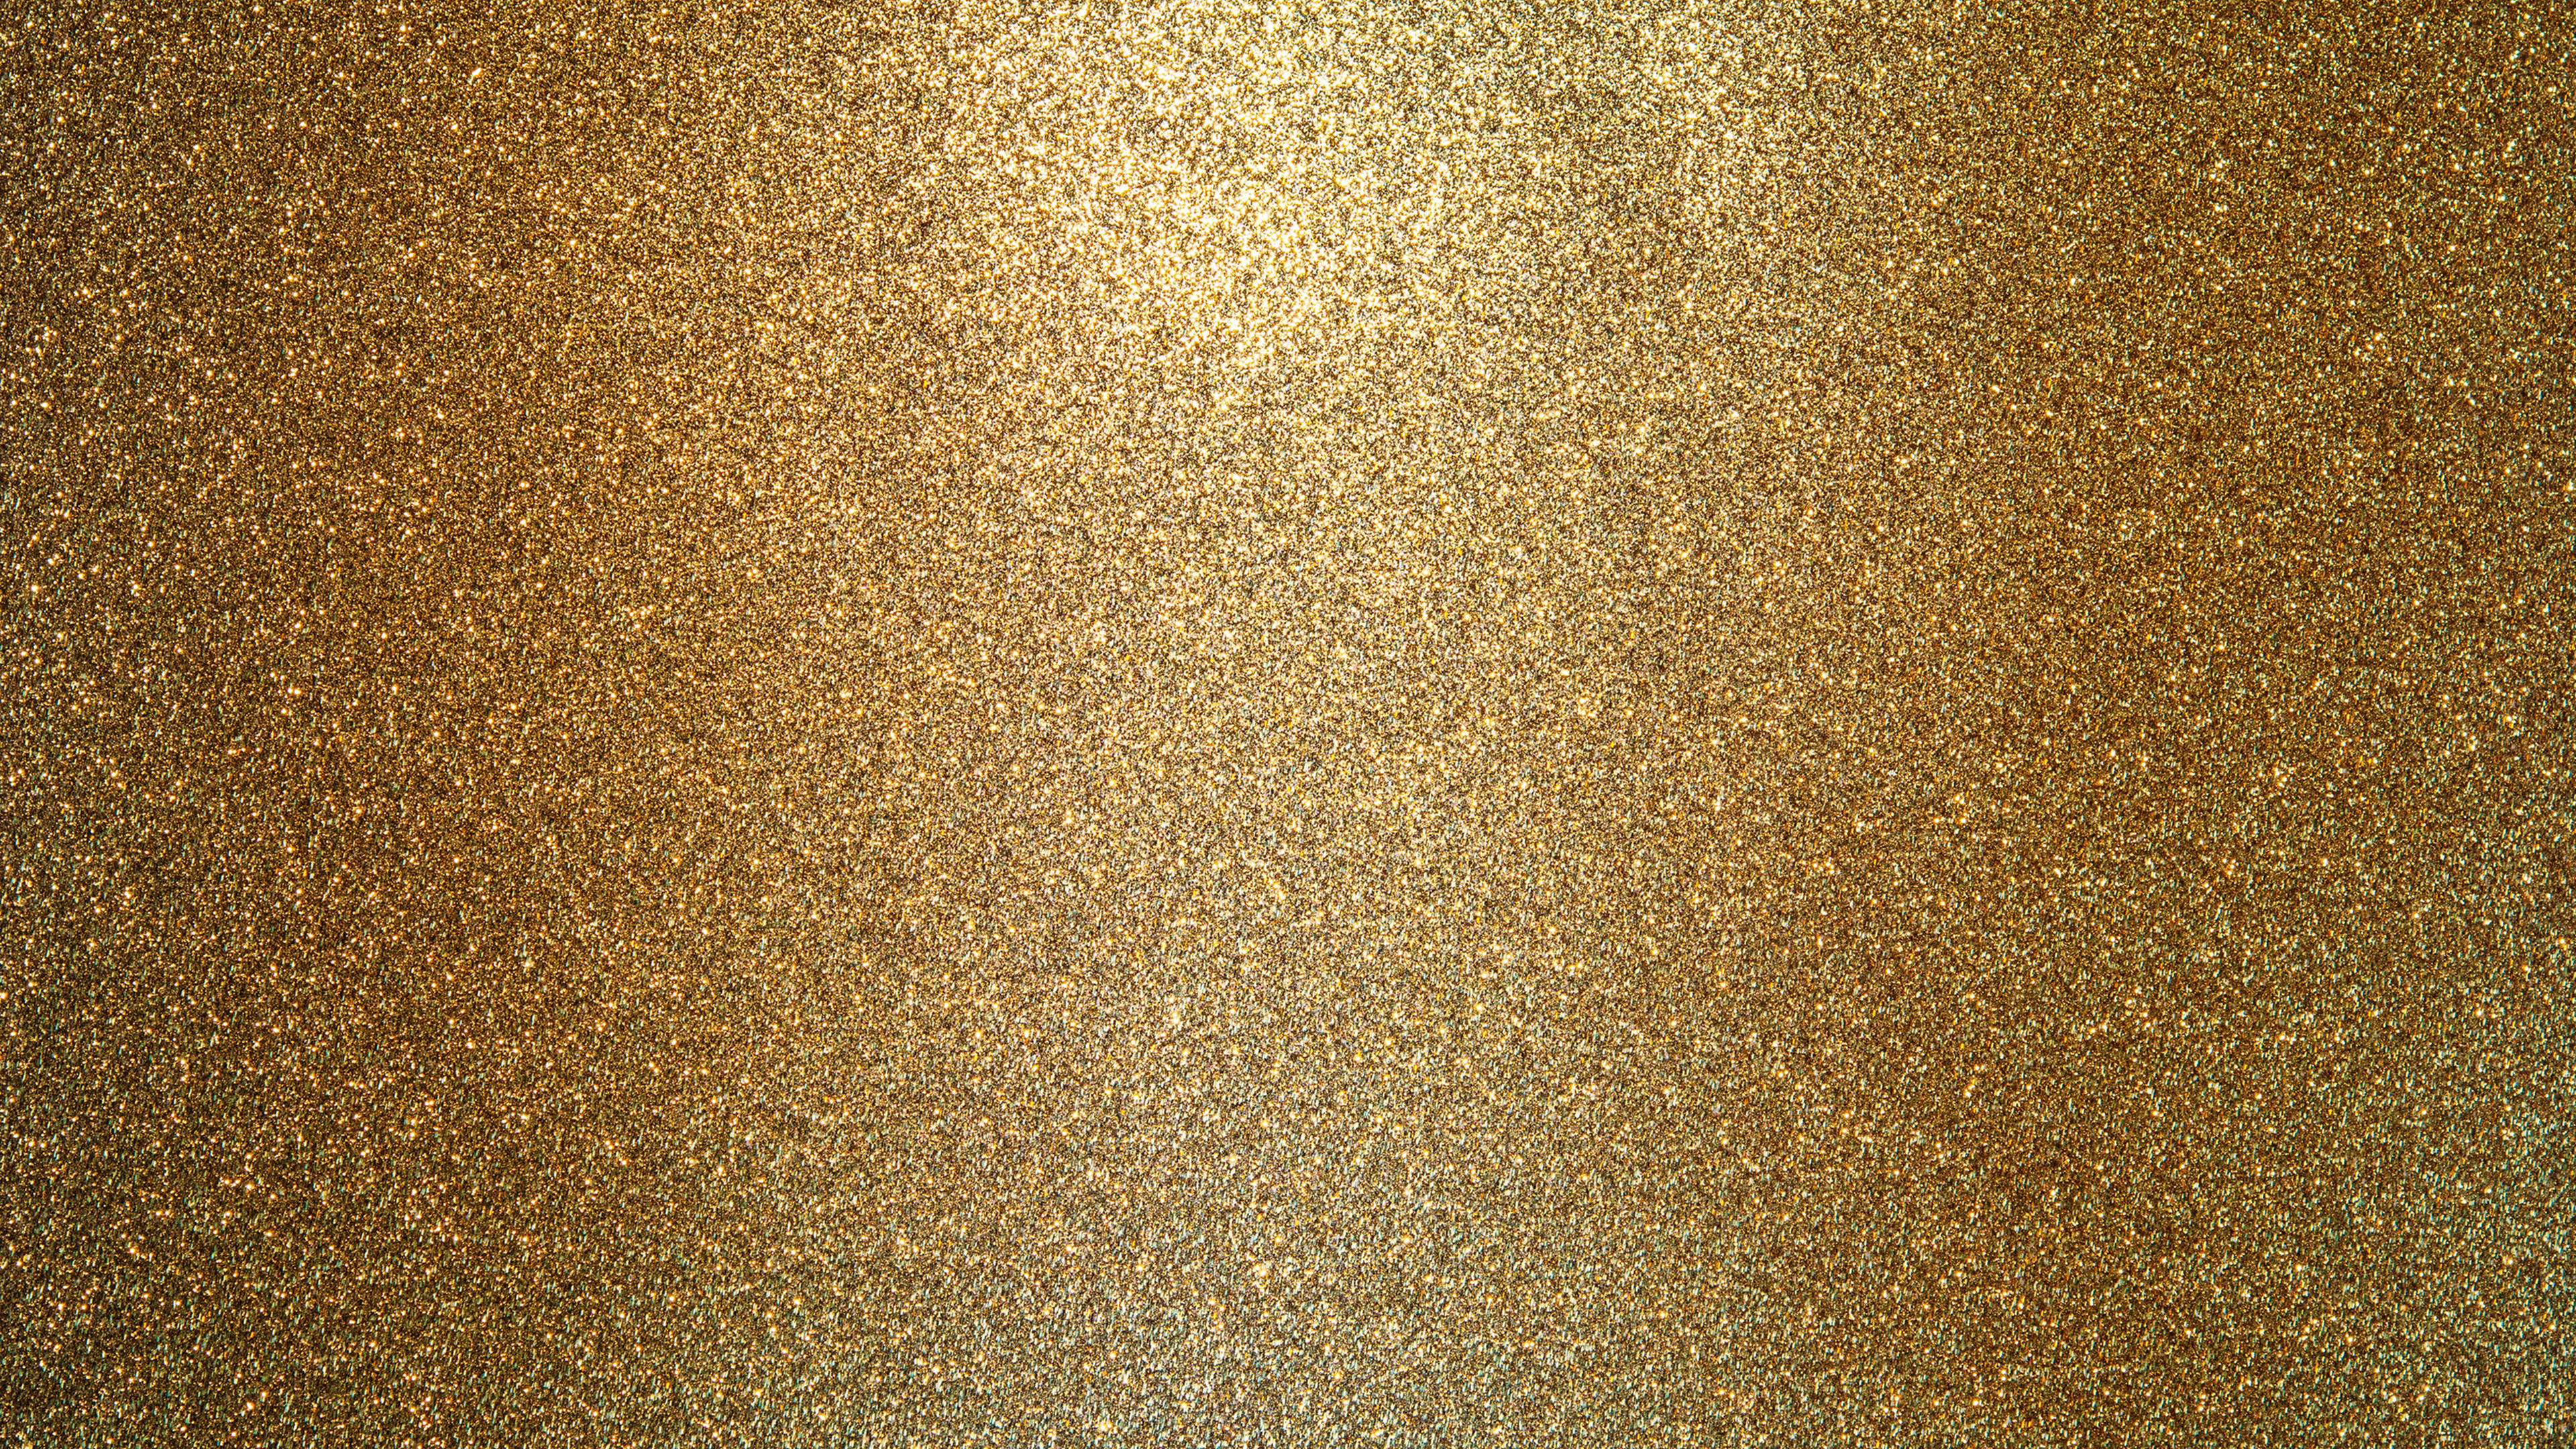 3840x2160 Golden Glitter Chromebook Wallpaper .